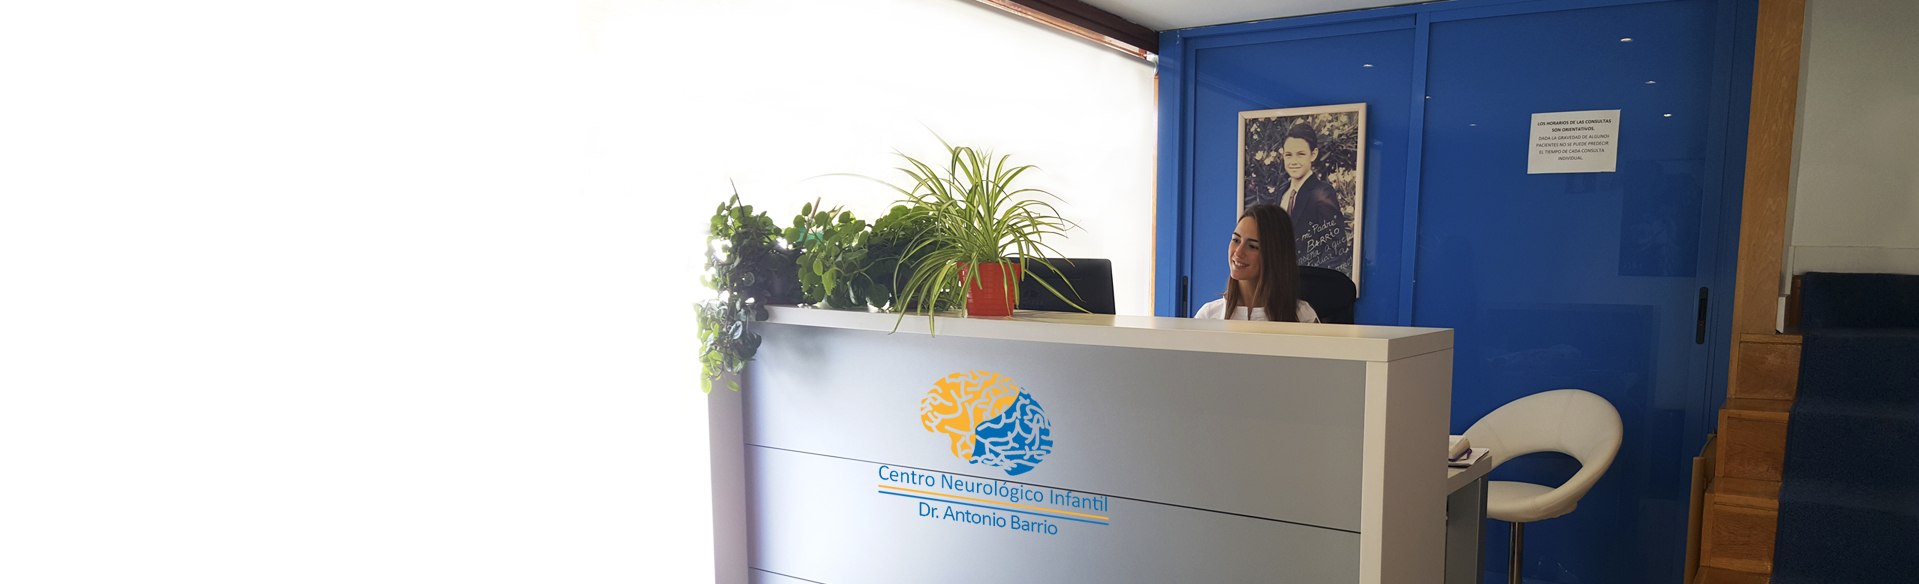 Centro Neurológico Infantil Dr. Antonio Barrio